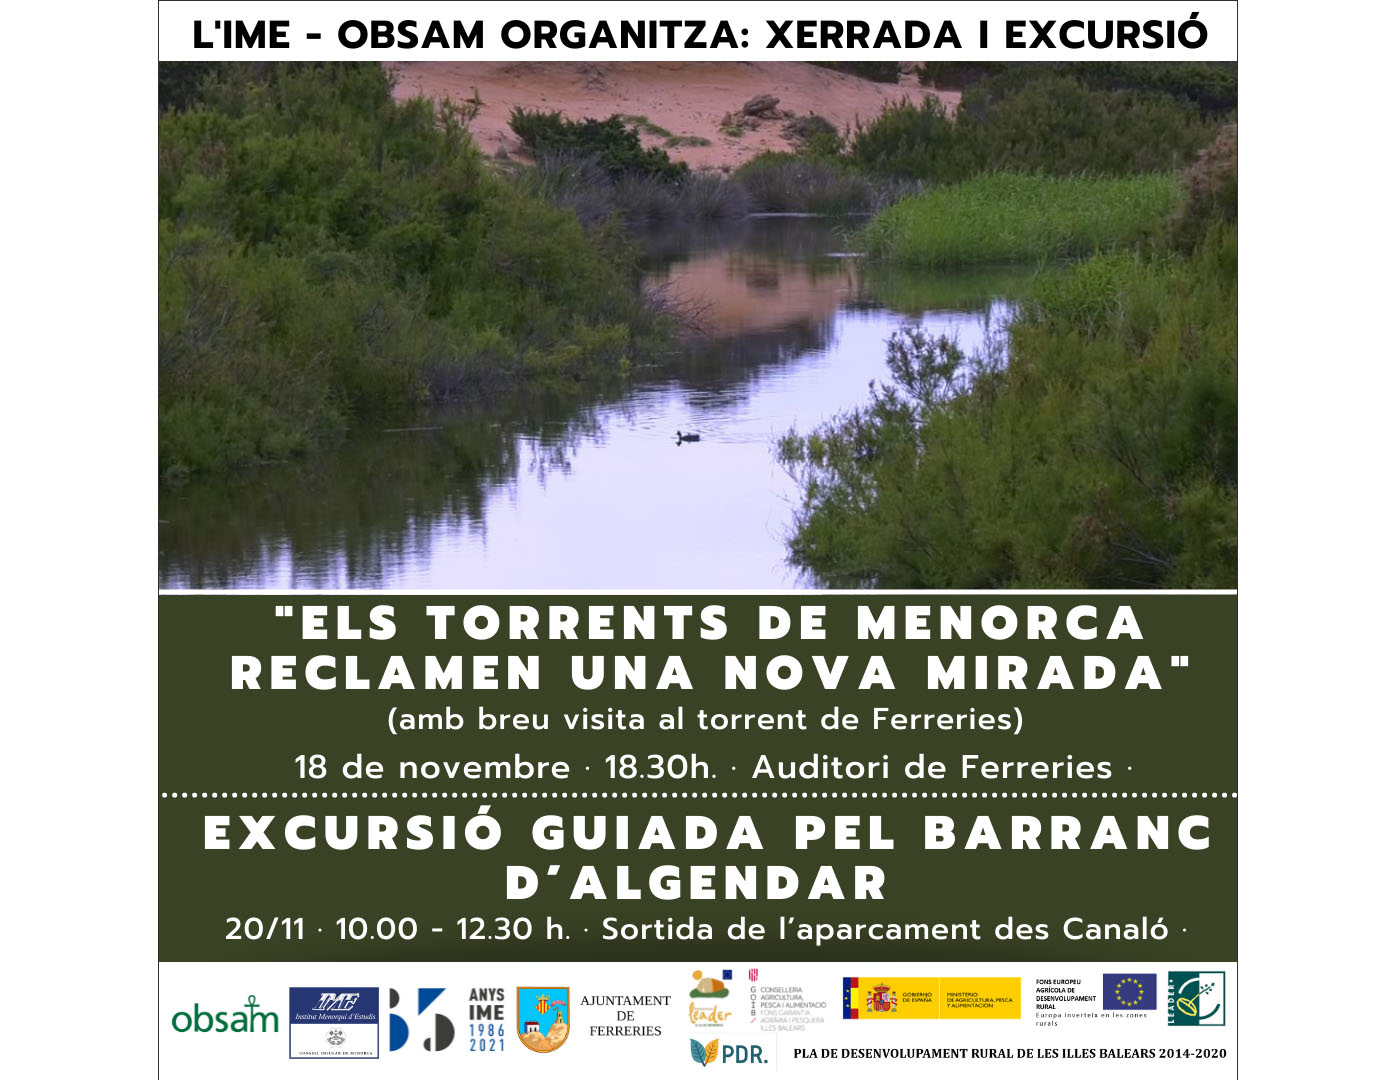 L'OBSAM-IME organitza la xerrada "Els torrents de Menorca reclamen una nova mirada" i una excursió guiada pel Barranc d'Algendar